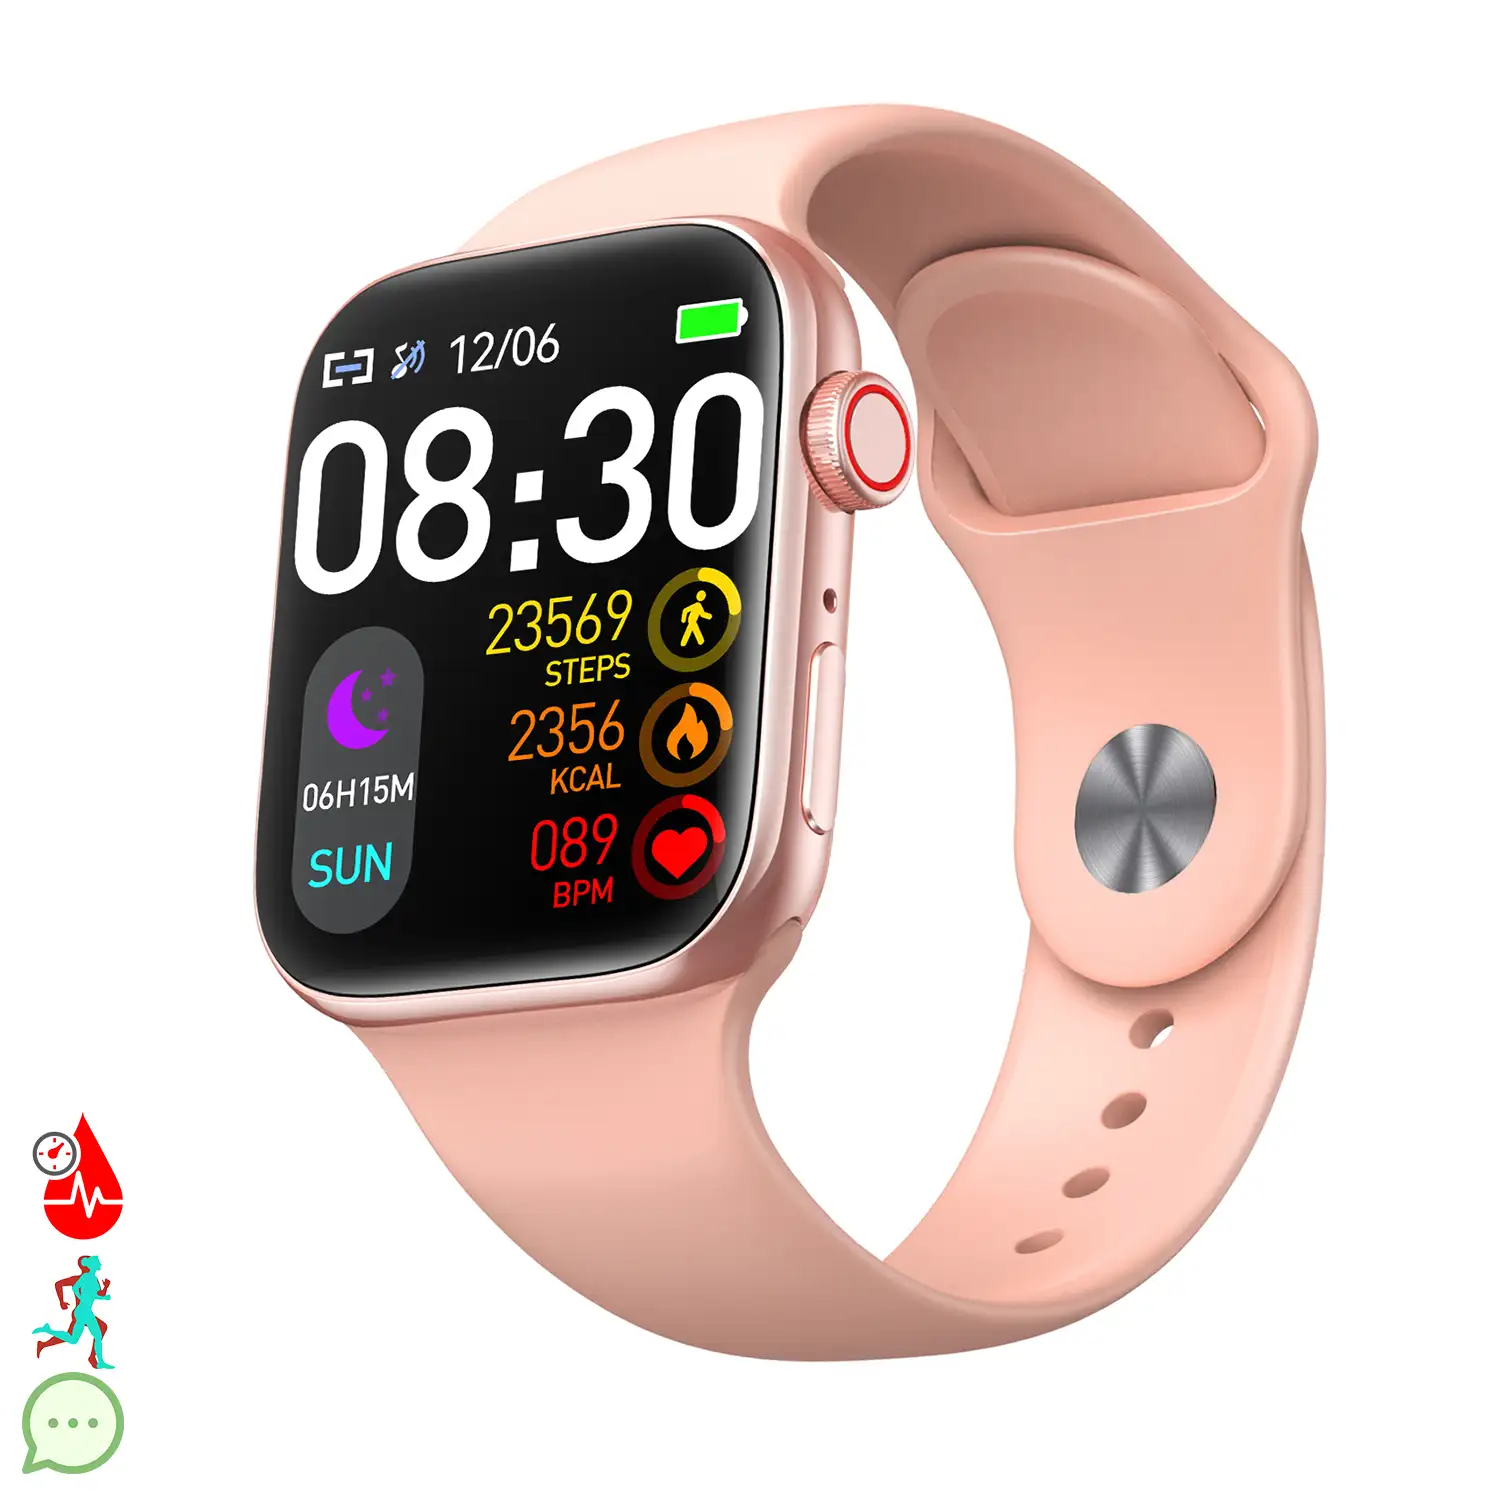 Smartwatch T900 Pro 8 con pantalla de 1,8 HR, monitor cardiaco y de O2 en sangre. Varios modos deportivos, notificaciones de apps.